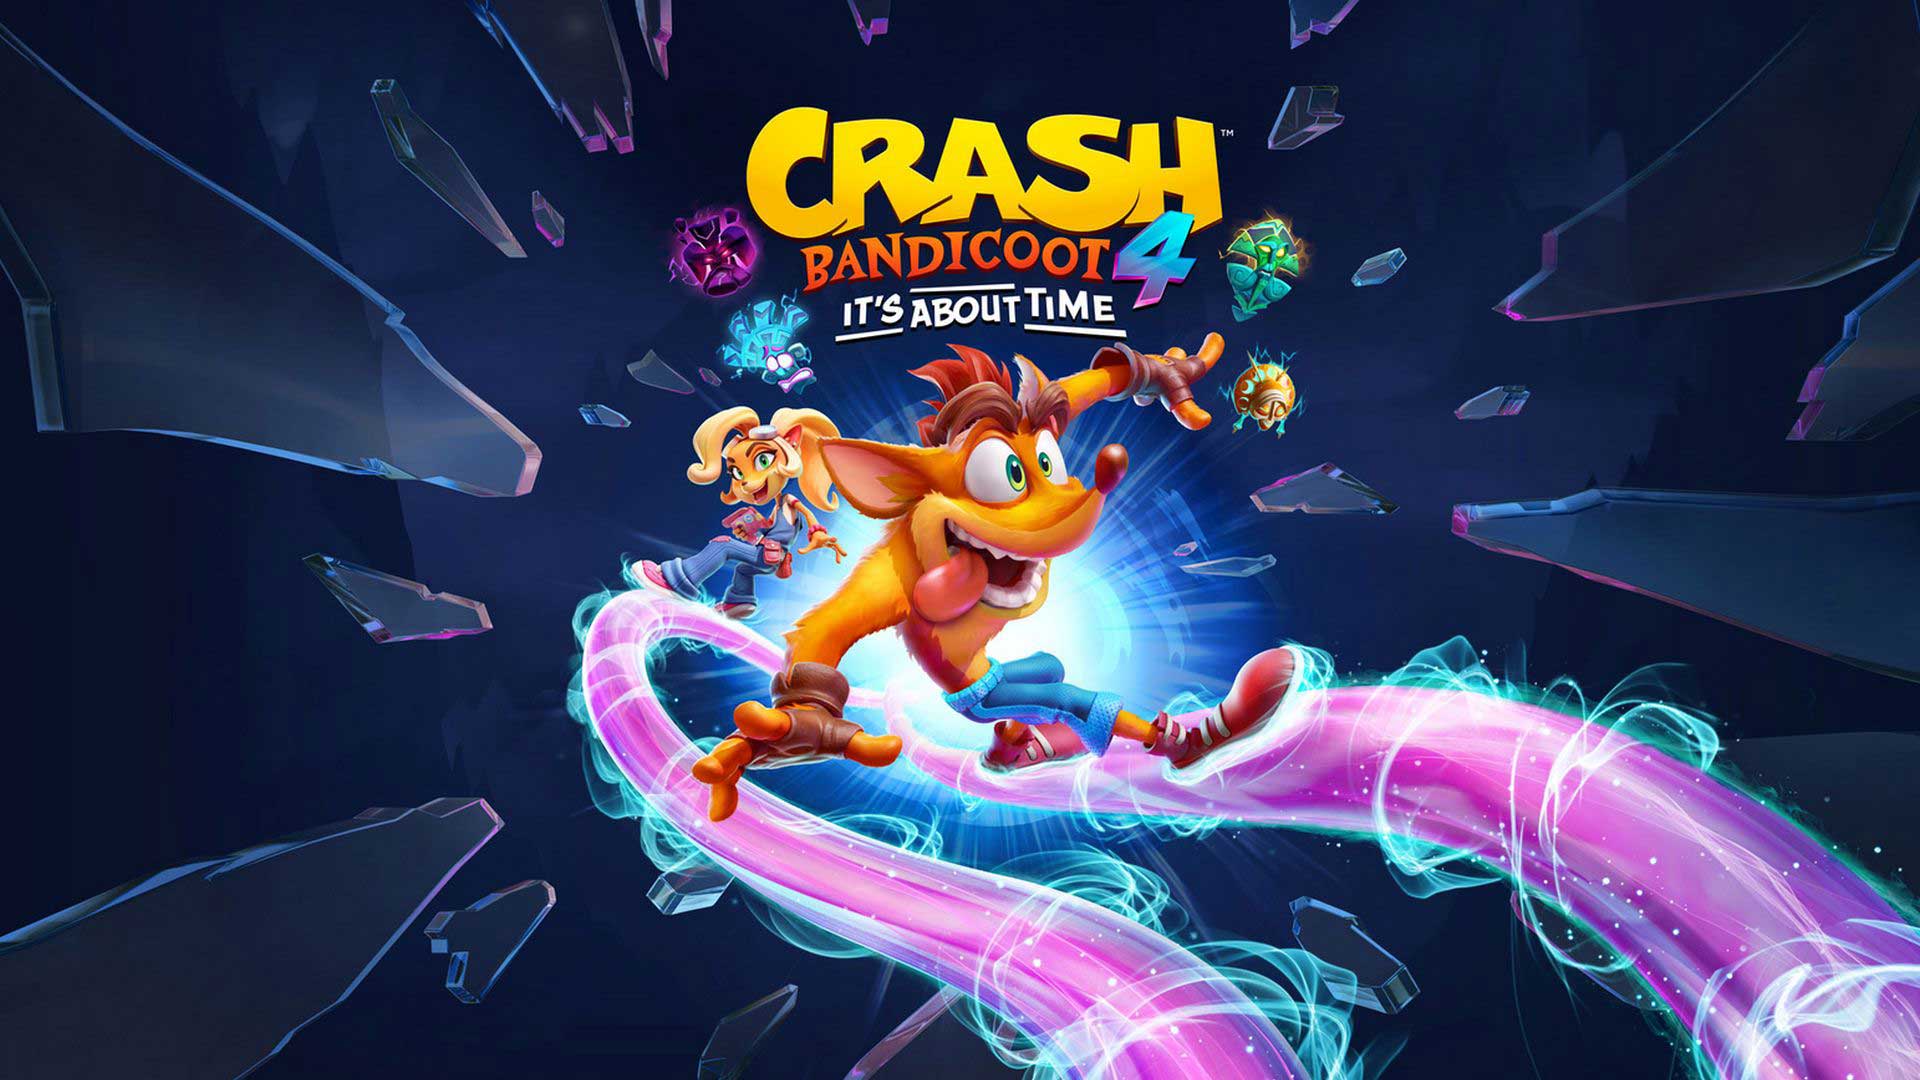 شایعه: بازی جدید Crash Bandicoot در حال توسعه است